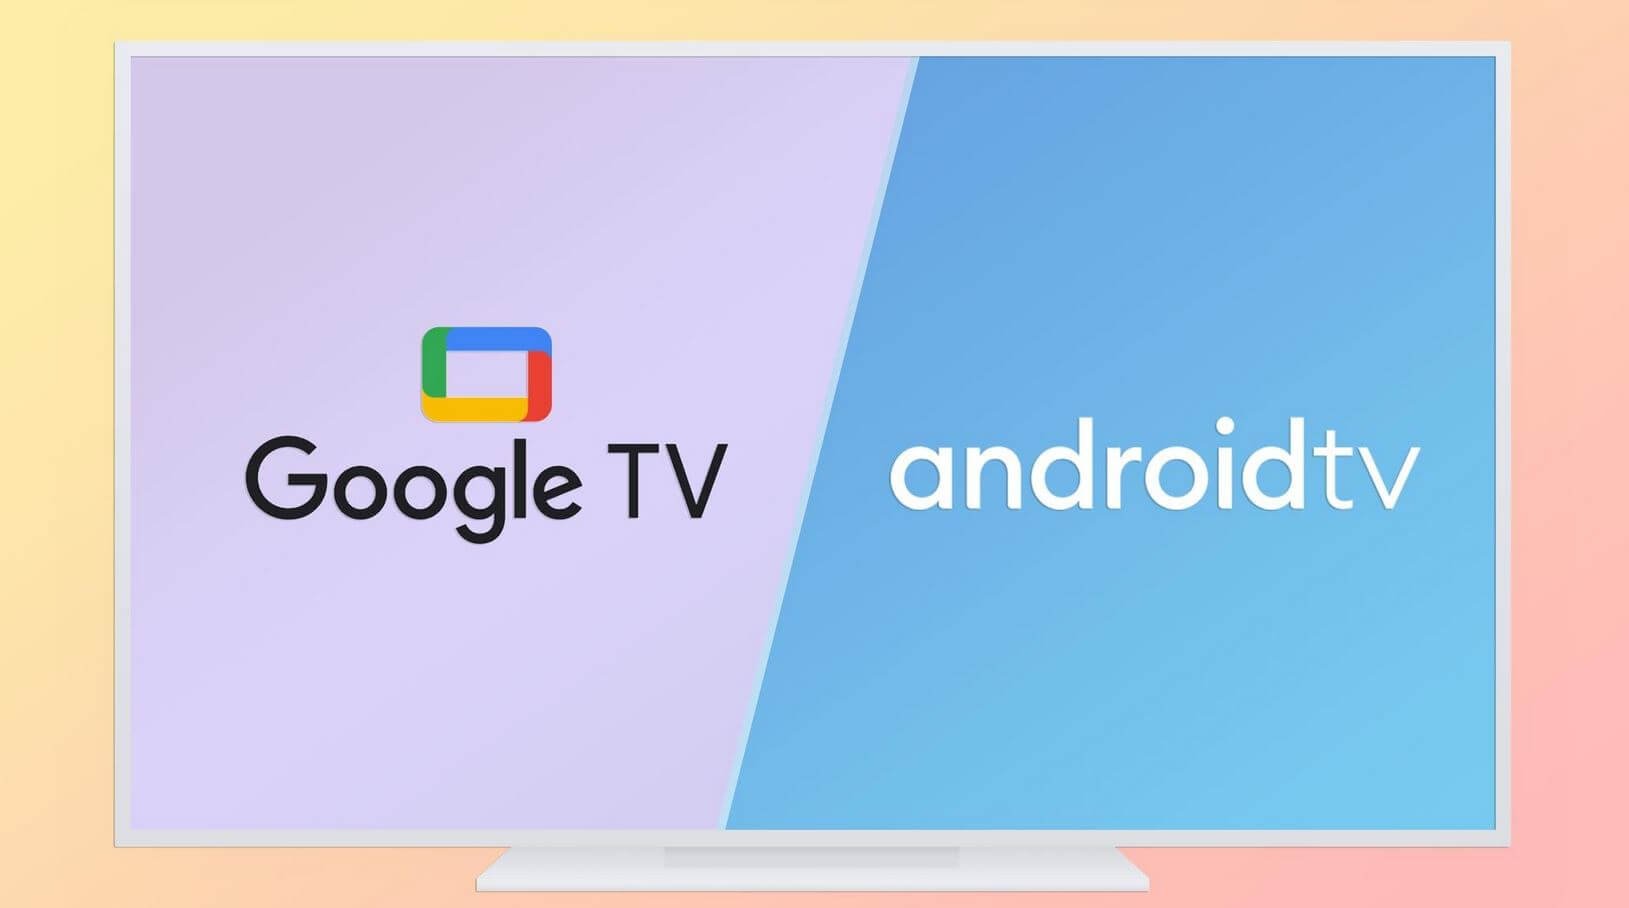 Отличия Android TV от Google TV. Google TV построена на базе Андроид ТВ, поэтому смысла переплачивать нет. Фото.